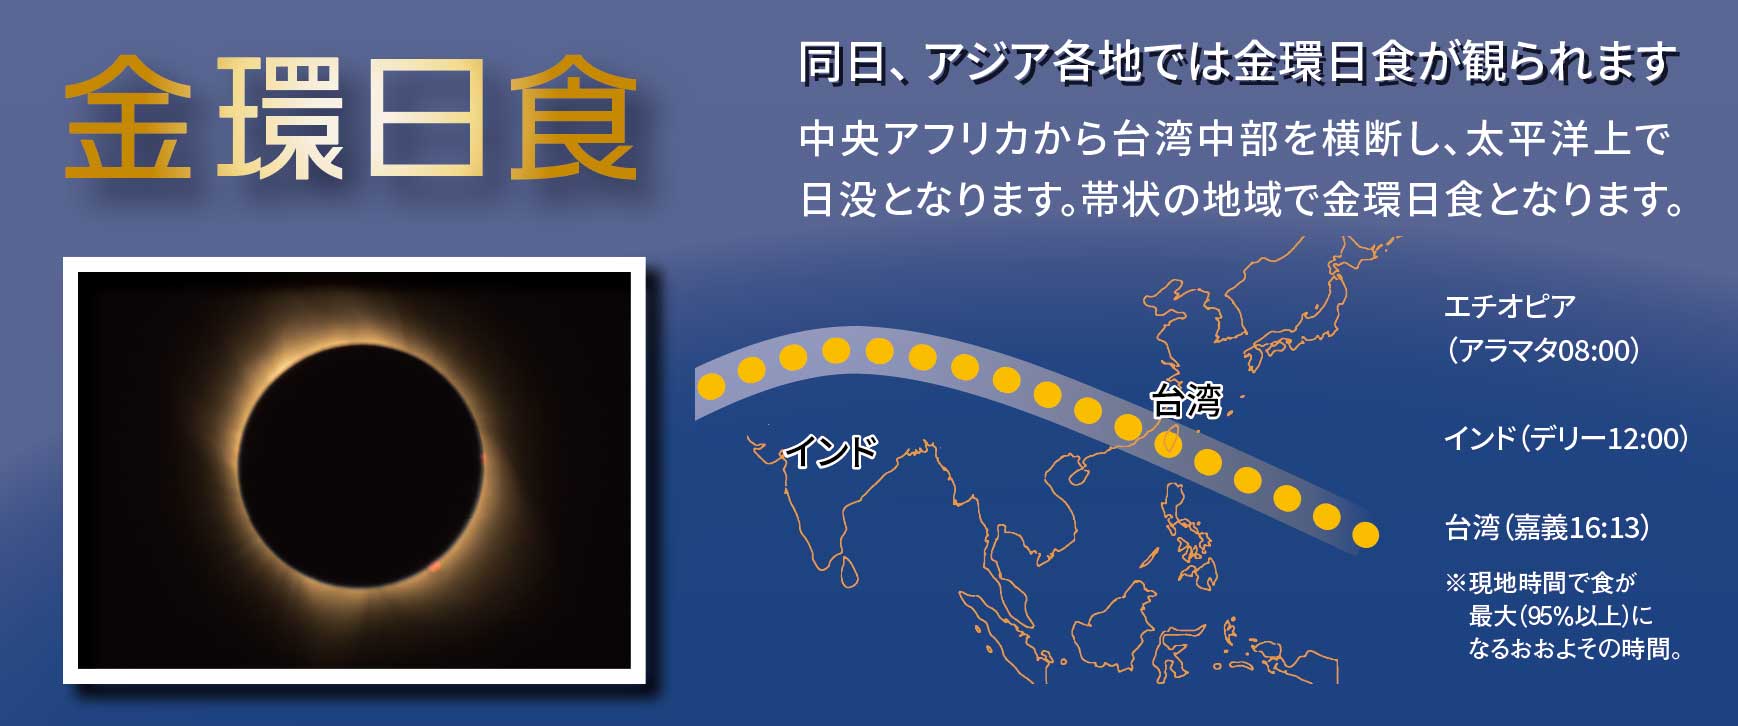 6月21日(Sun)全国で部分日食が観られます